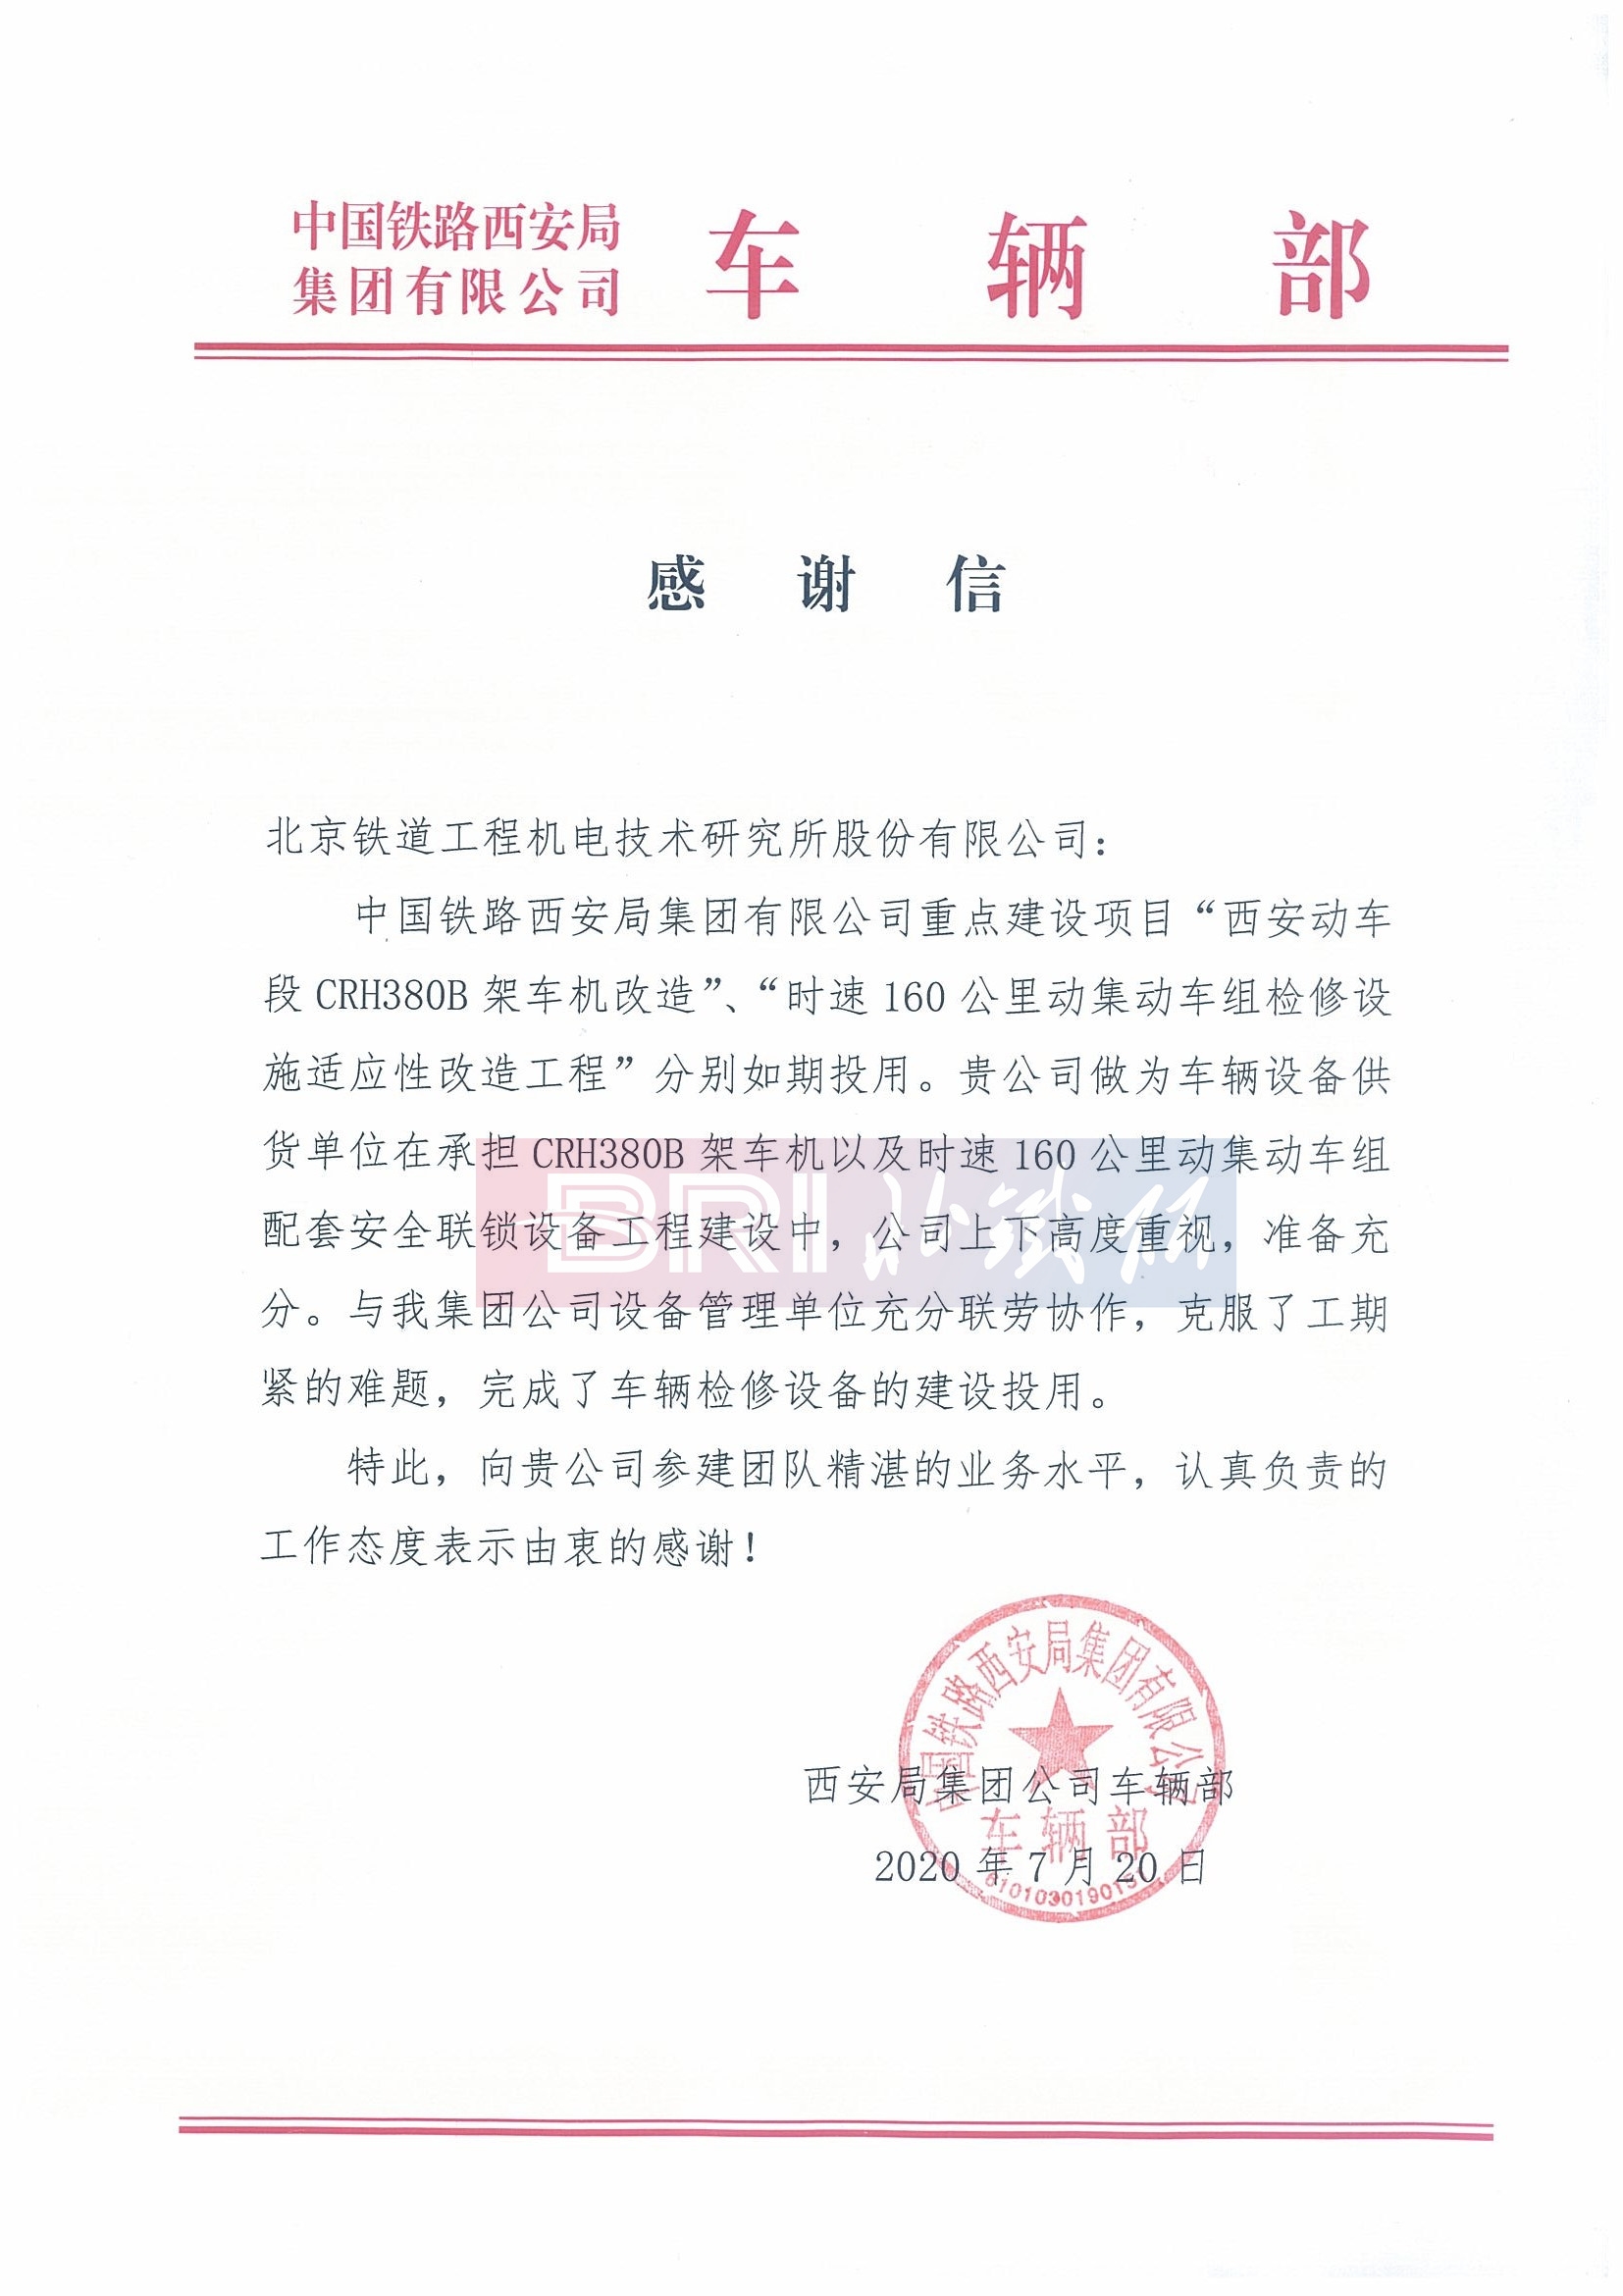 中国铁路西安局集团有限公司车辆部感谢信